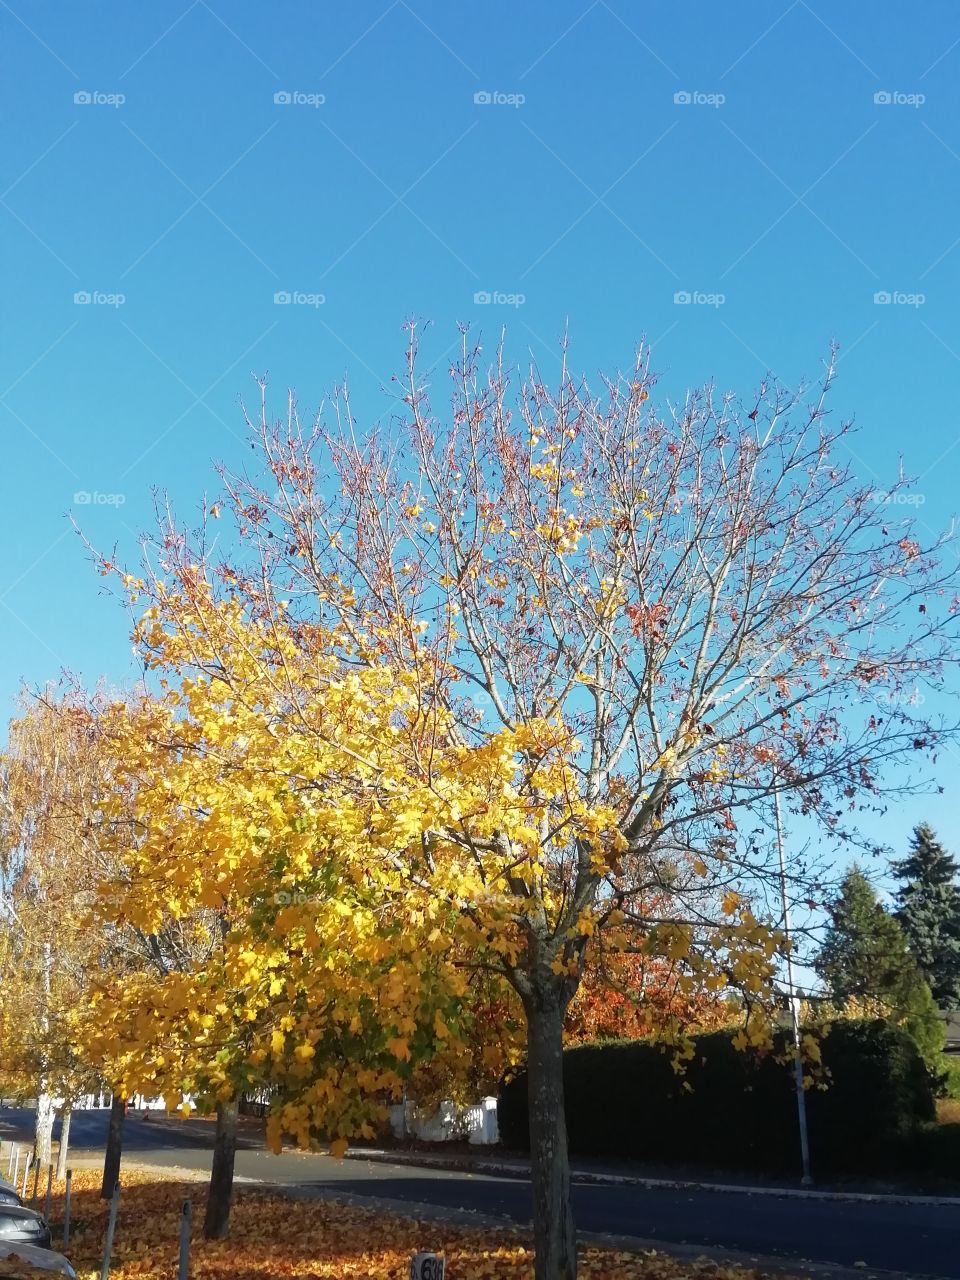 Gula höstlöv i ett träd som är på väg att tappa alla blad inför den kommande vintern, det gula mot den klarblå himlen är så otroligt vackert